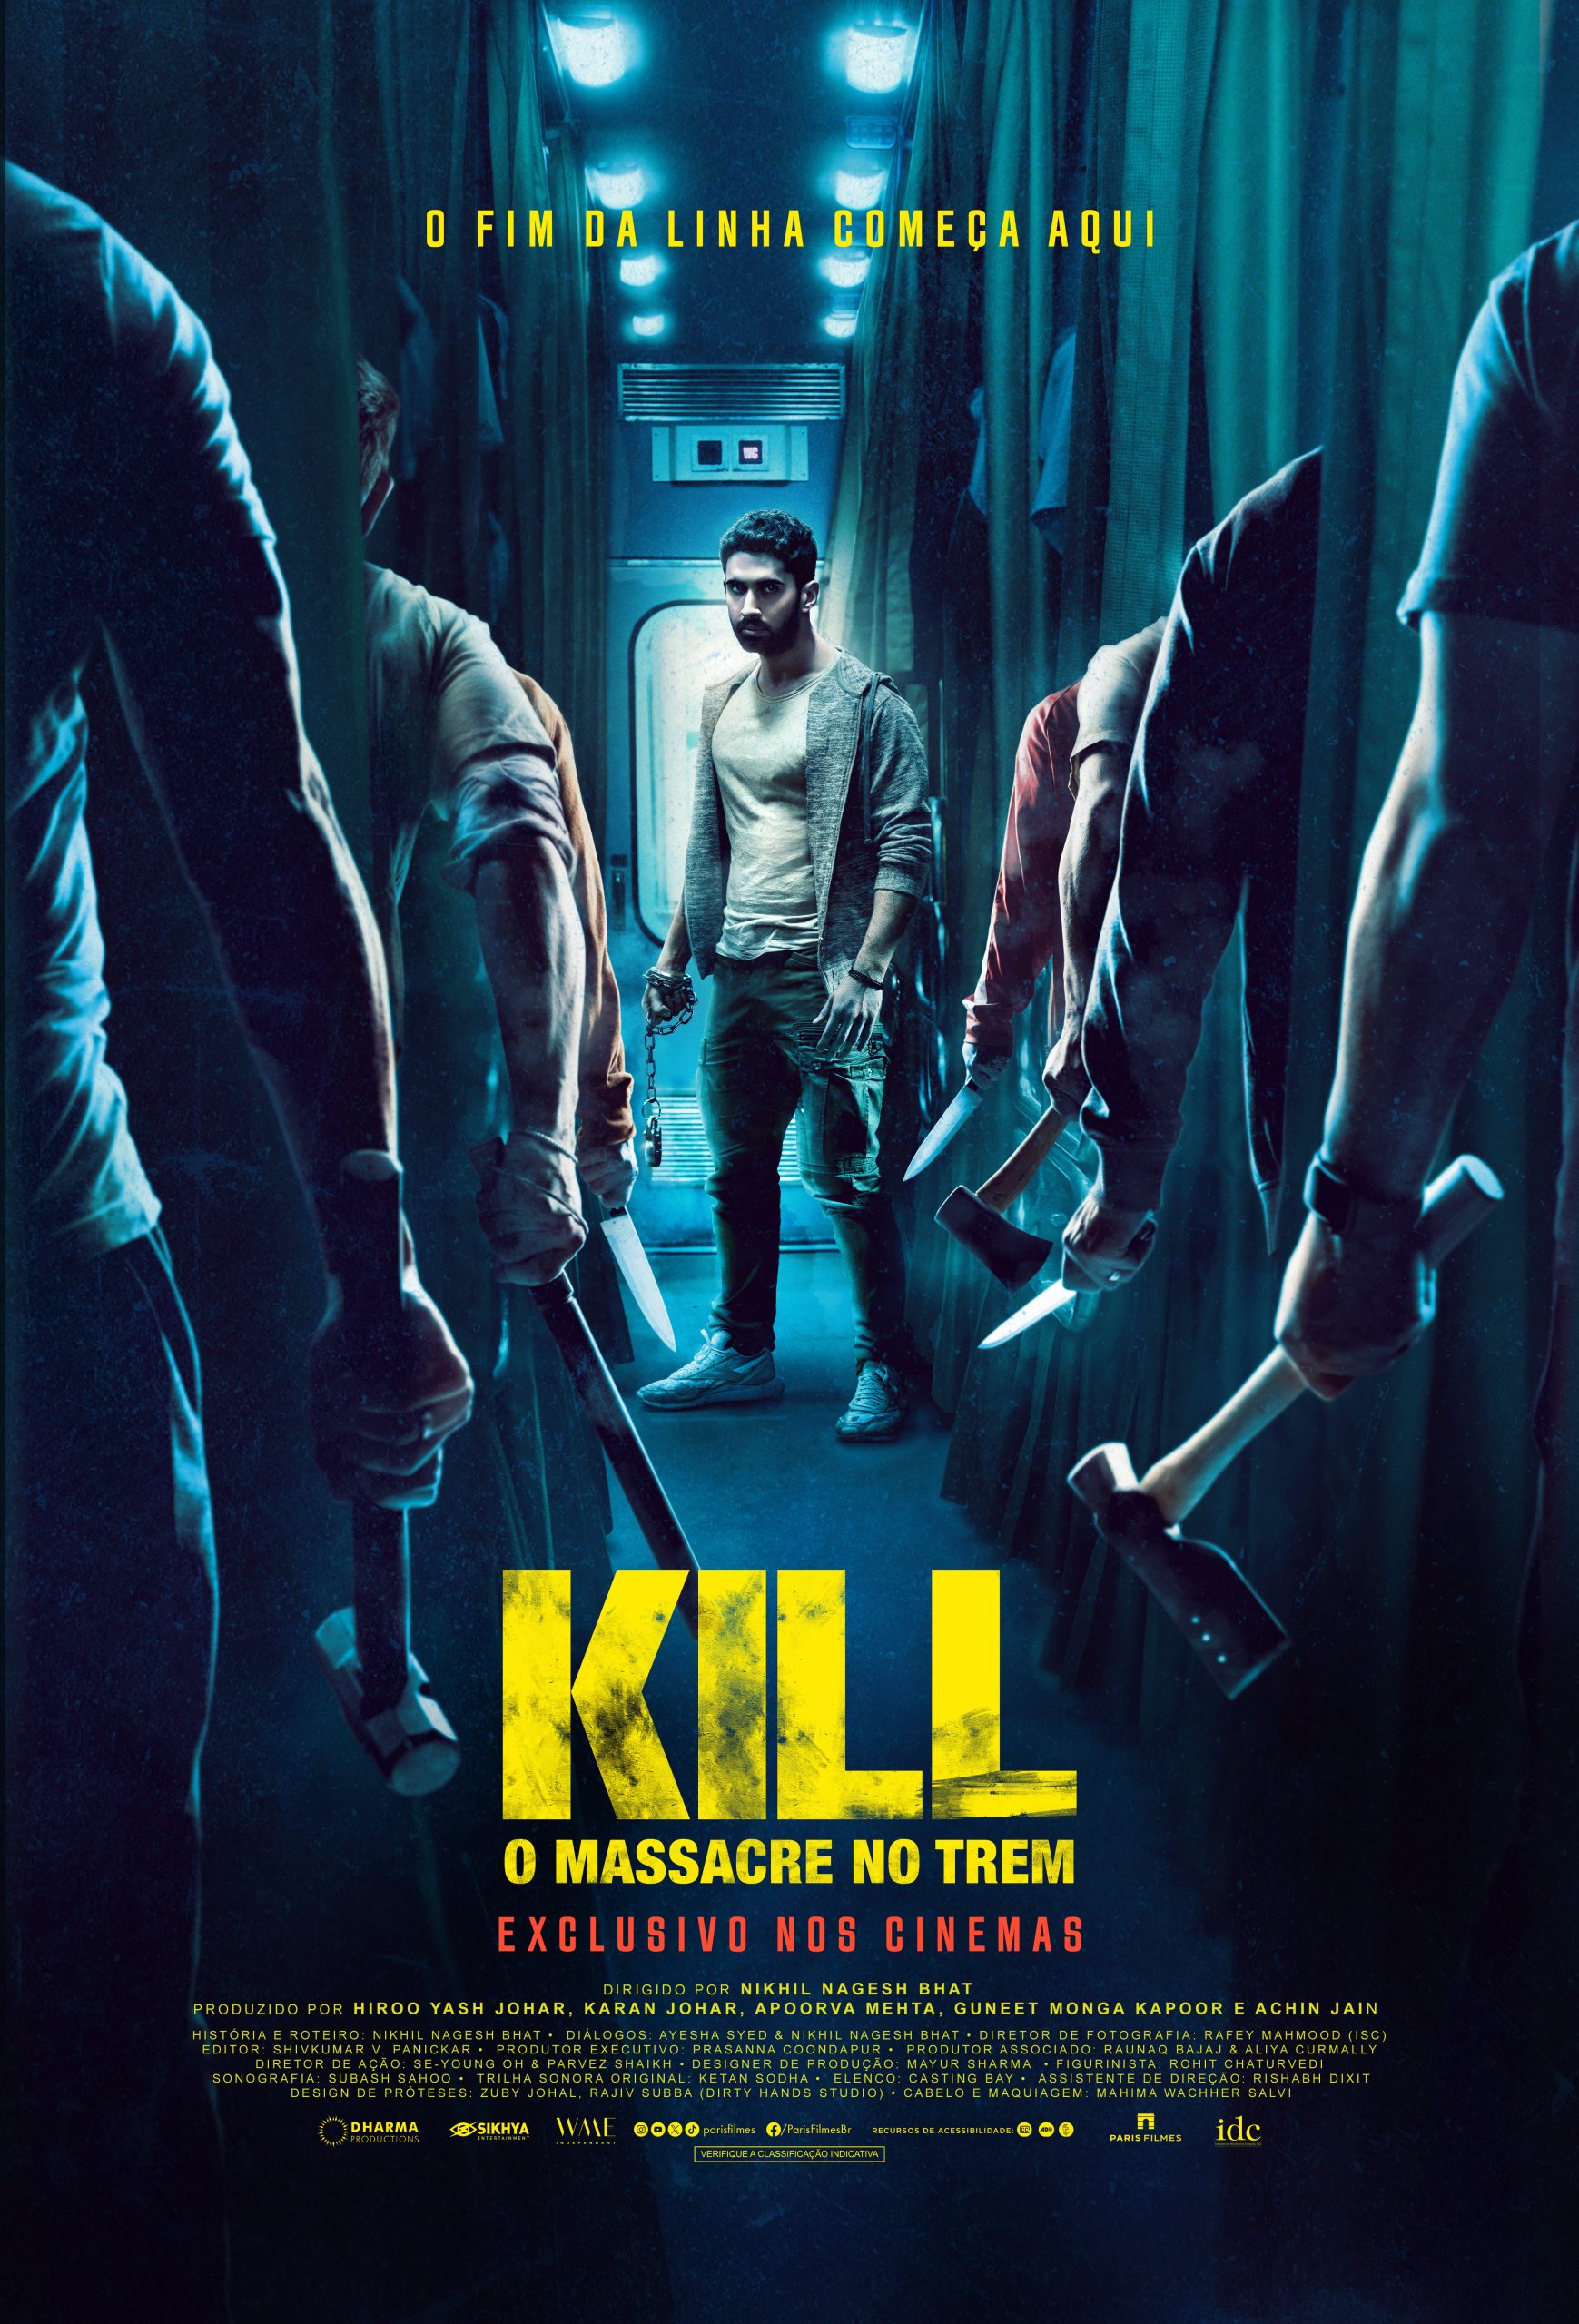 Paris Filmes anuncia KILL – O Massacre no Trem